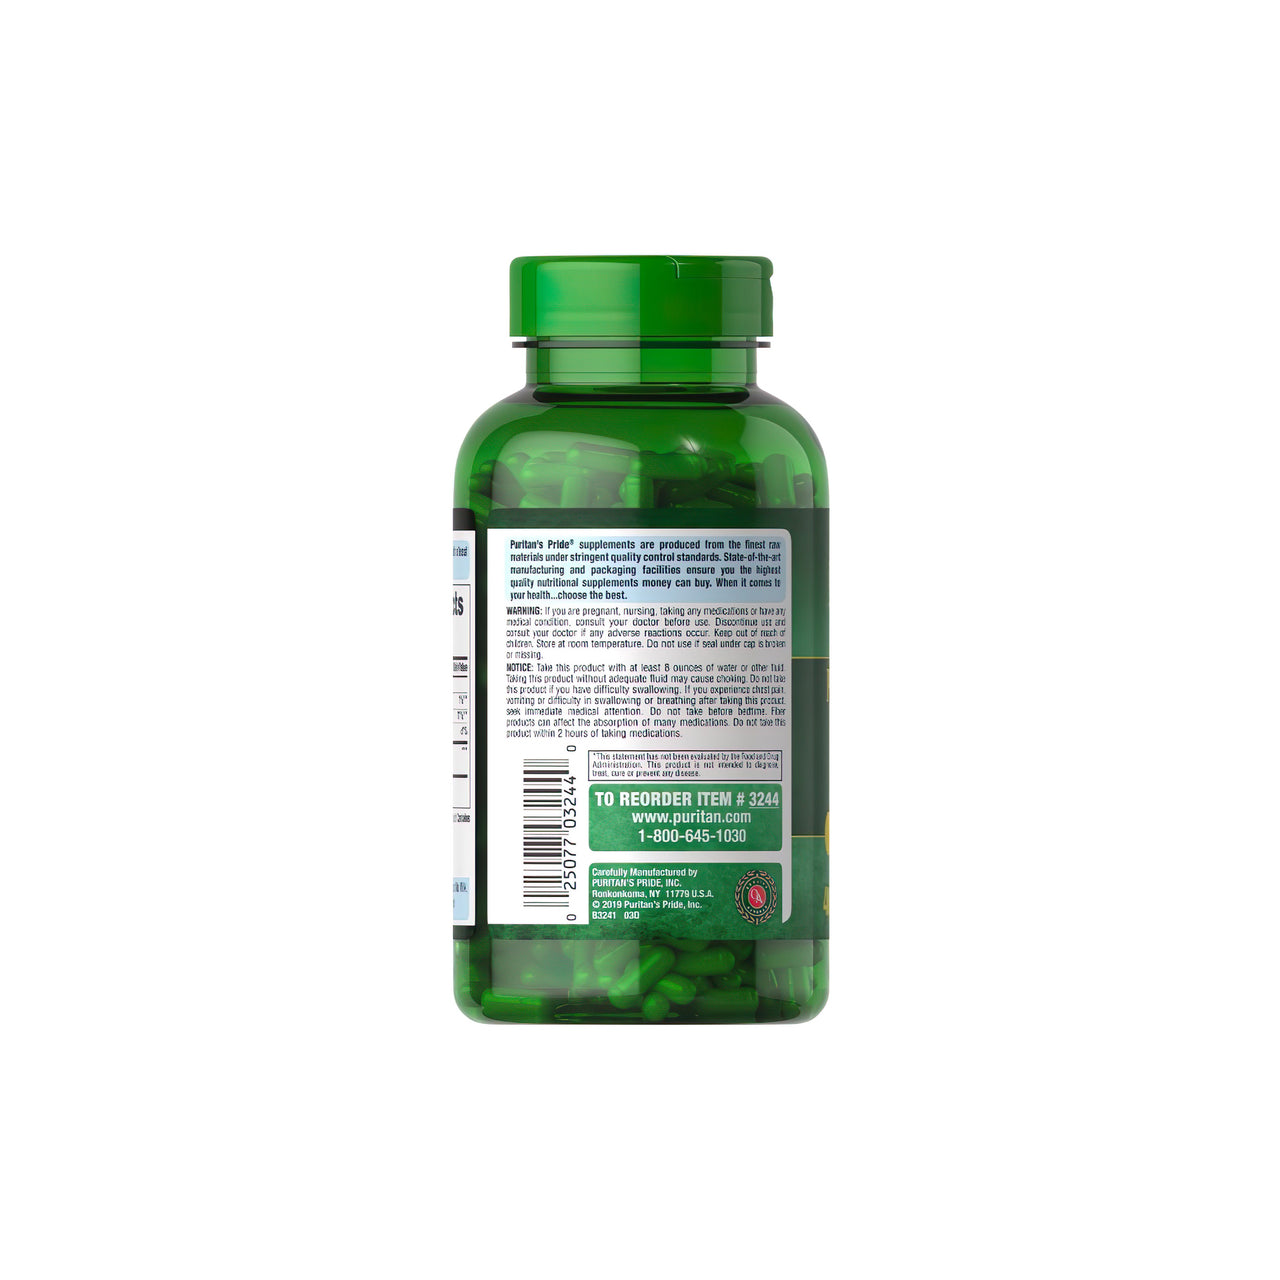 Um frasco de Psyllium Husks 500 mg 400 Rapid Release Capsules da Puritan's Pride com benefícios para a saúde digestiva e do cólon sobre um fundo branco.